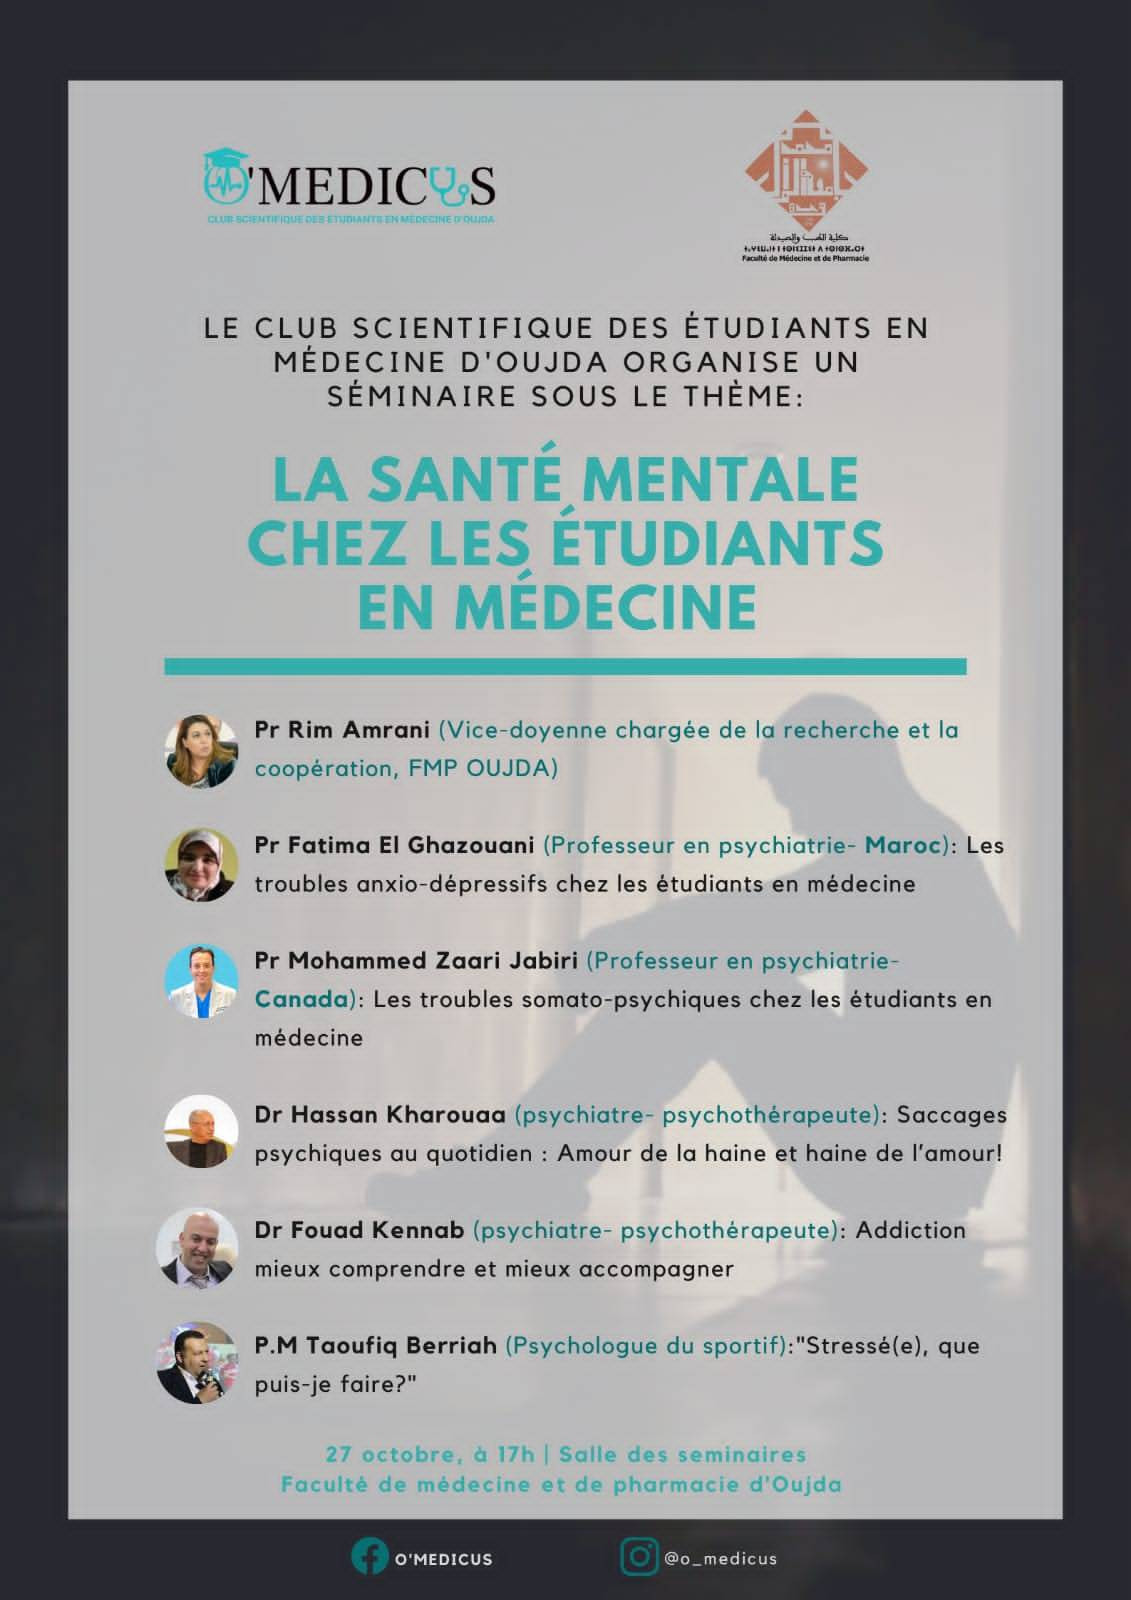 O'MEDICUS: La santé mentale chez les étudiants en médecine